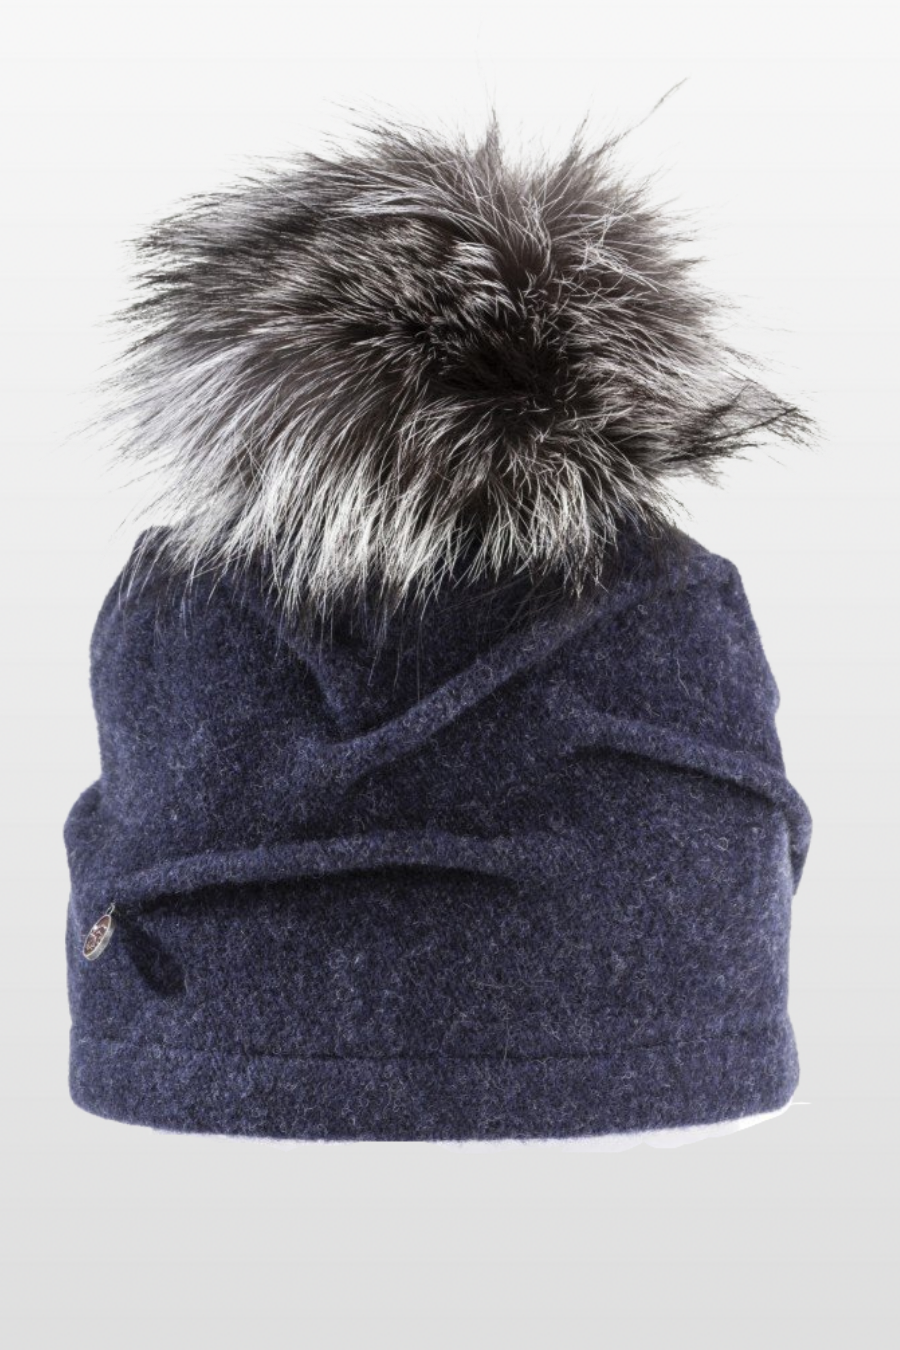 Clareta Wool Hat with Fur Pom Pom